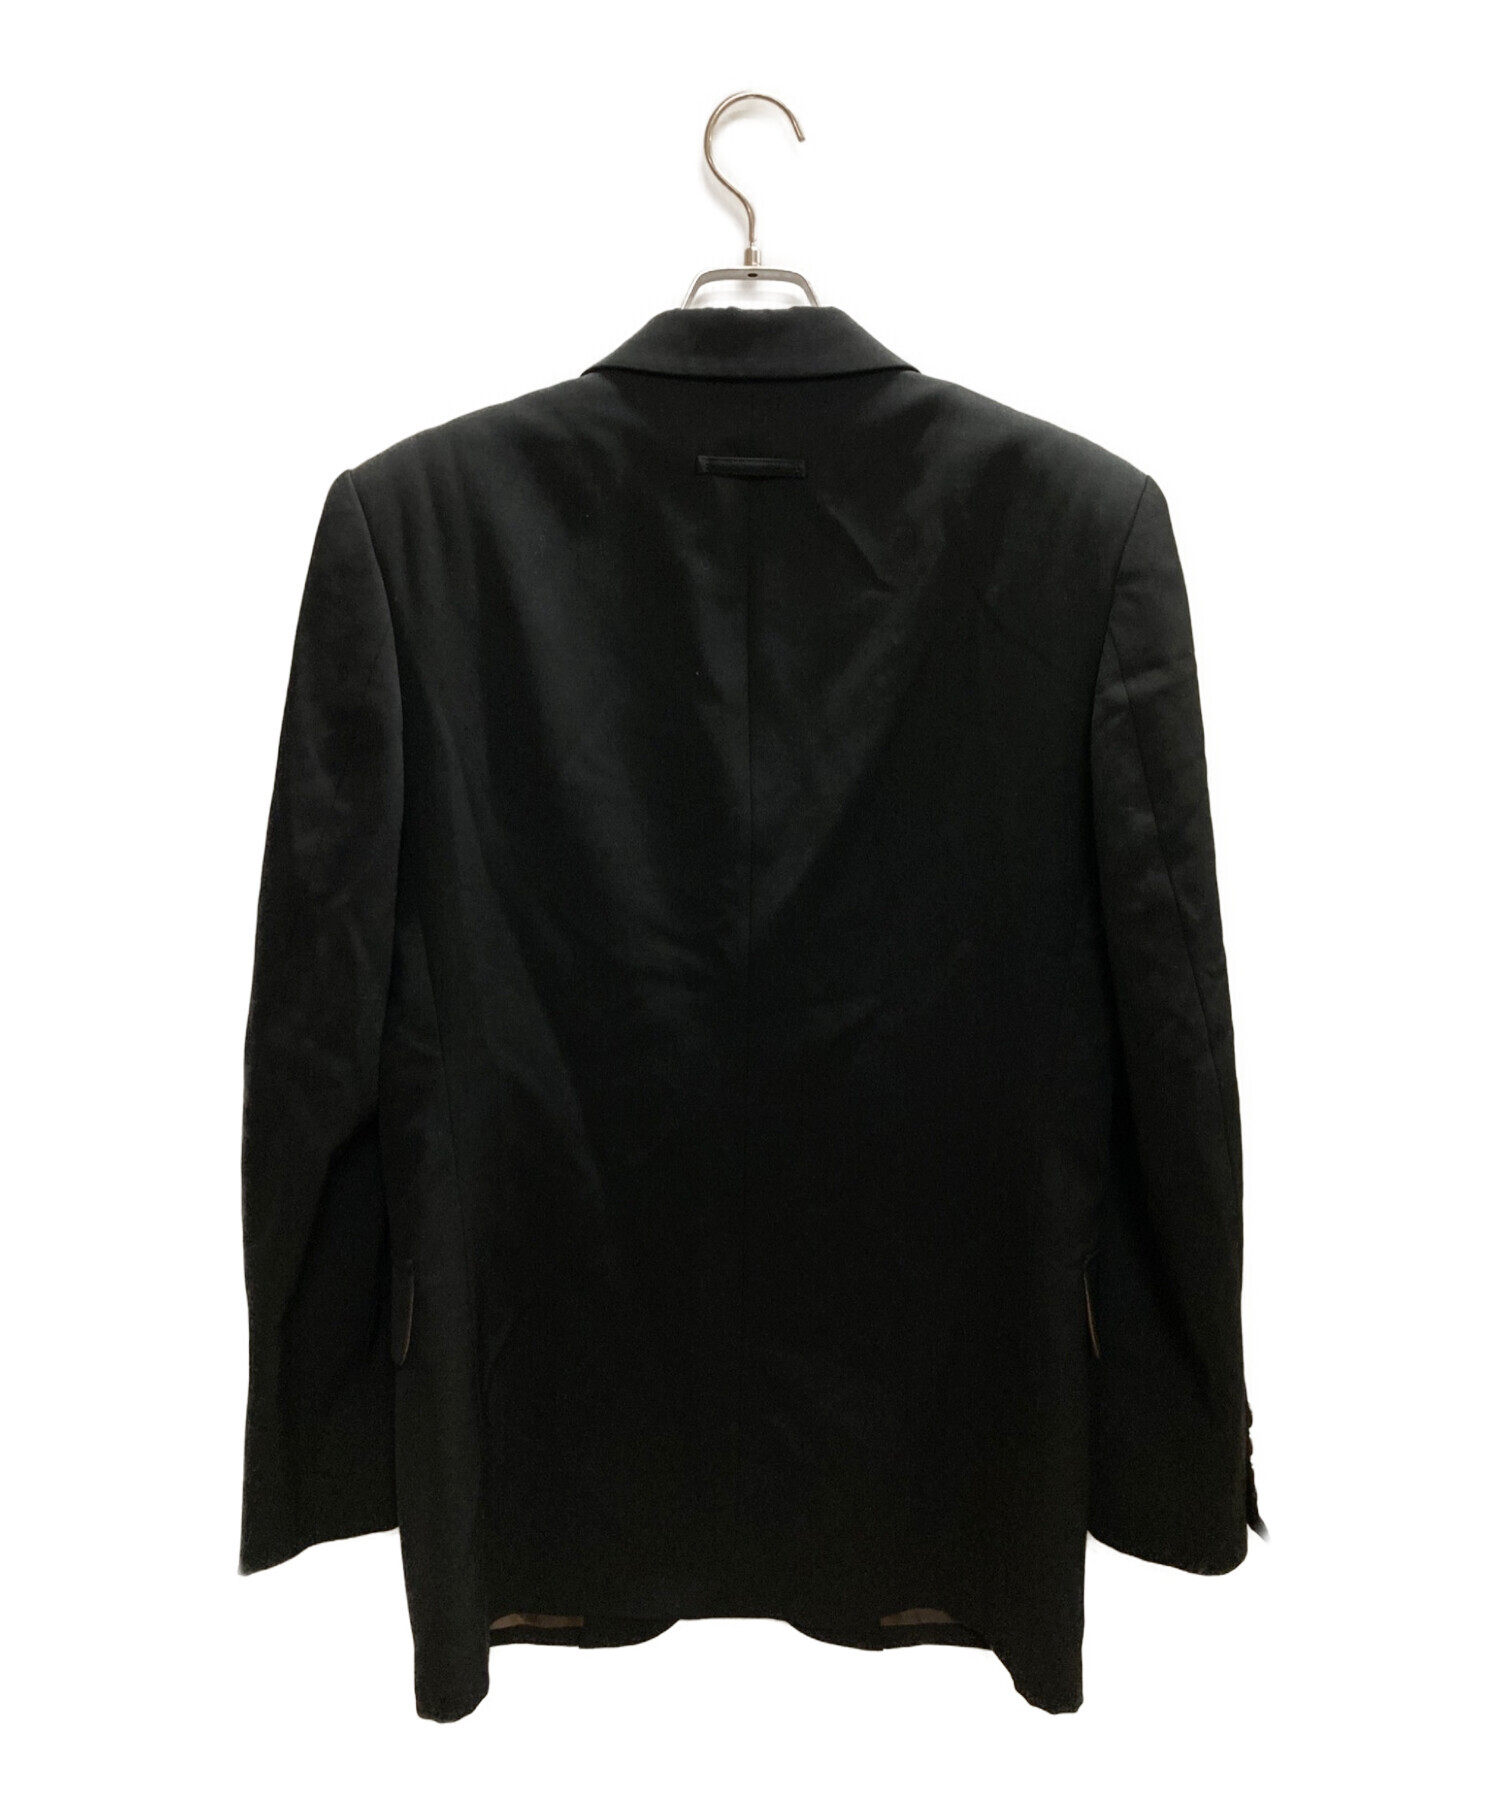 Jean Paul Gaultier homme (ジャンポールゴルチェオム) 4Bテーラードジャケット ブラック サイズ:48